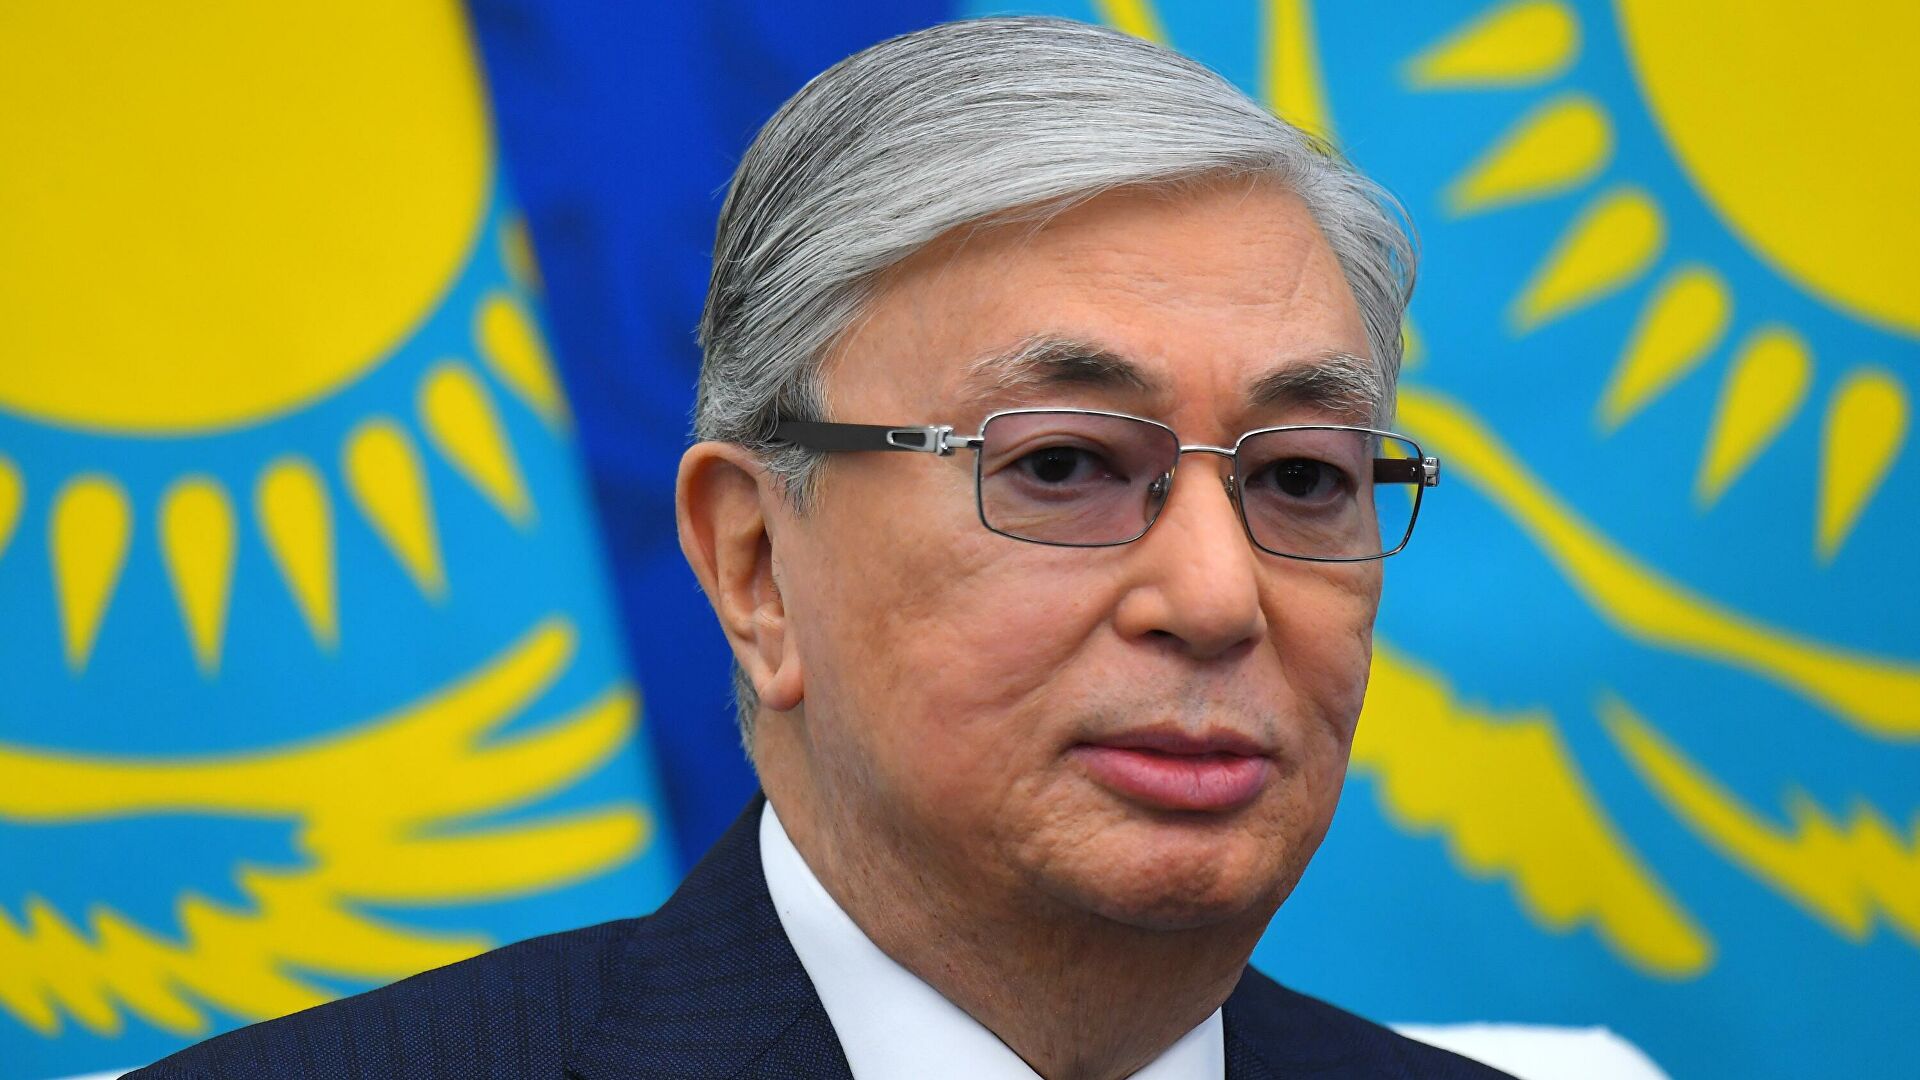 Токаев заявил о восстановлении конституционного порядка в Казахстане